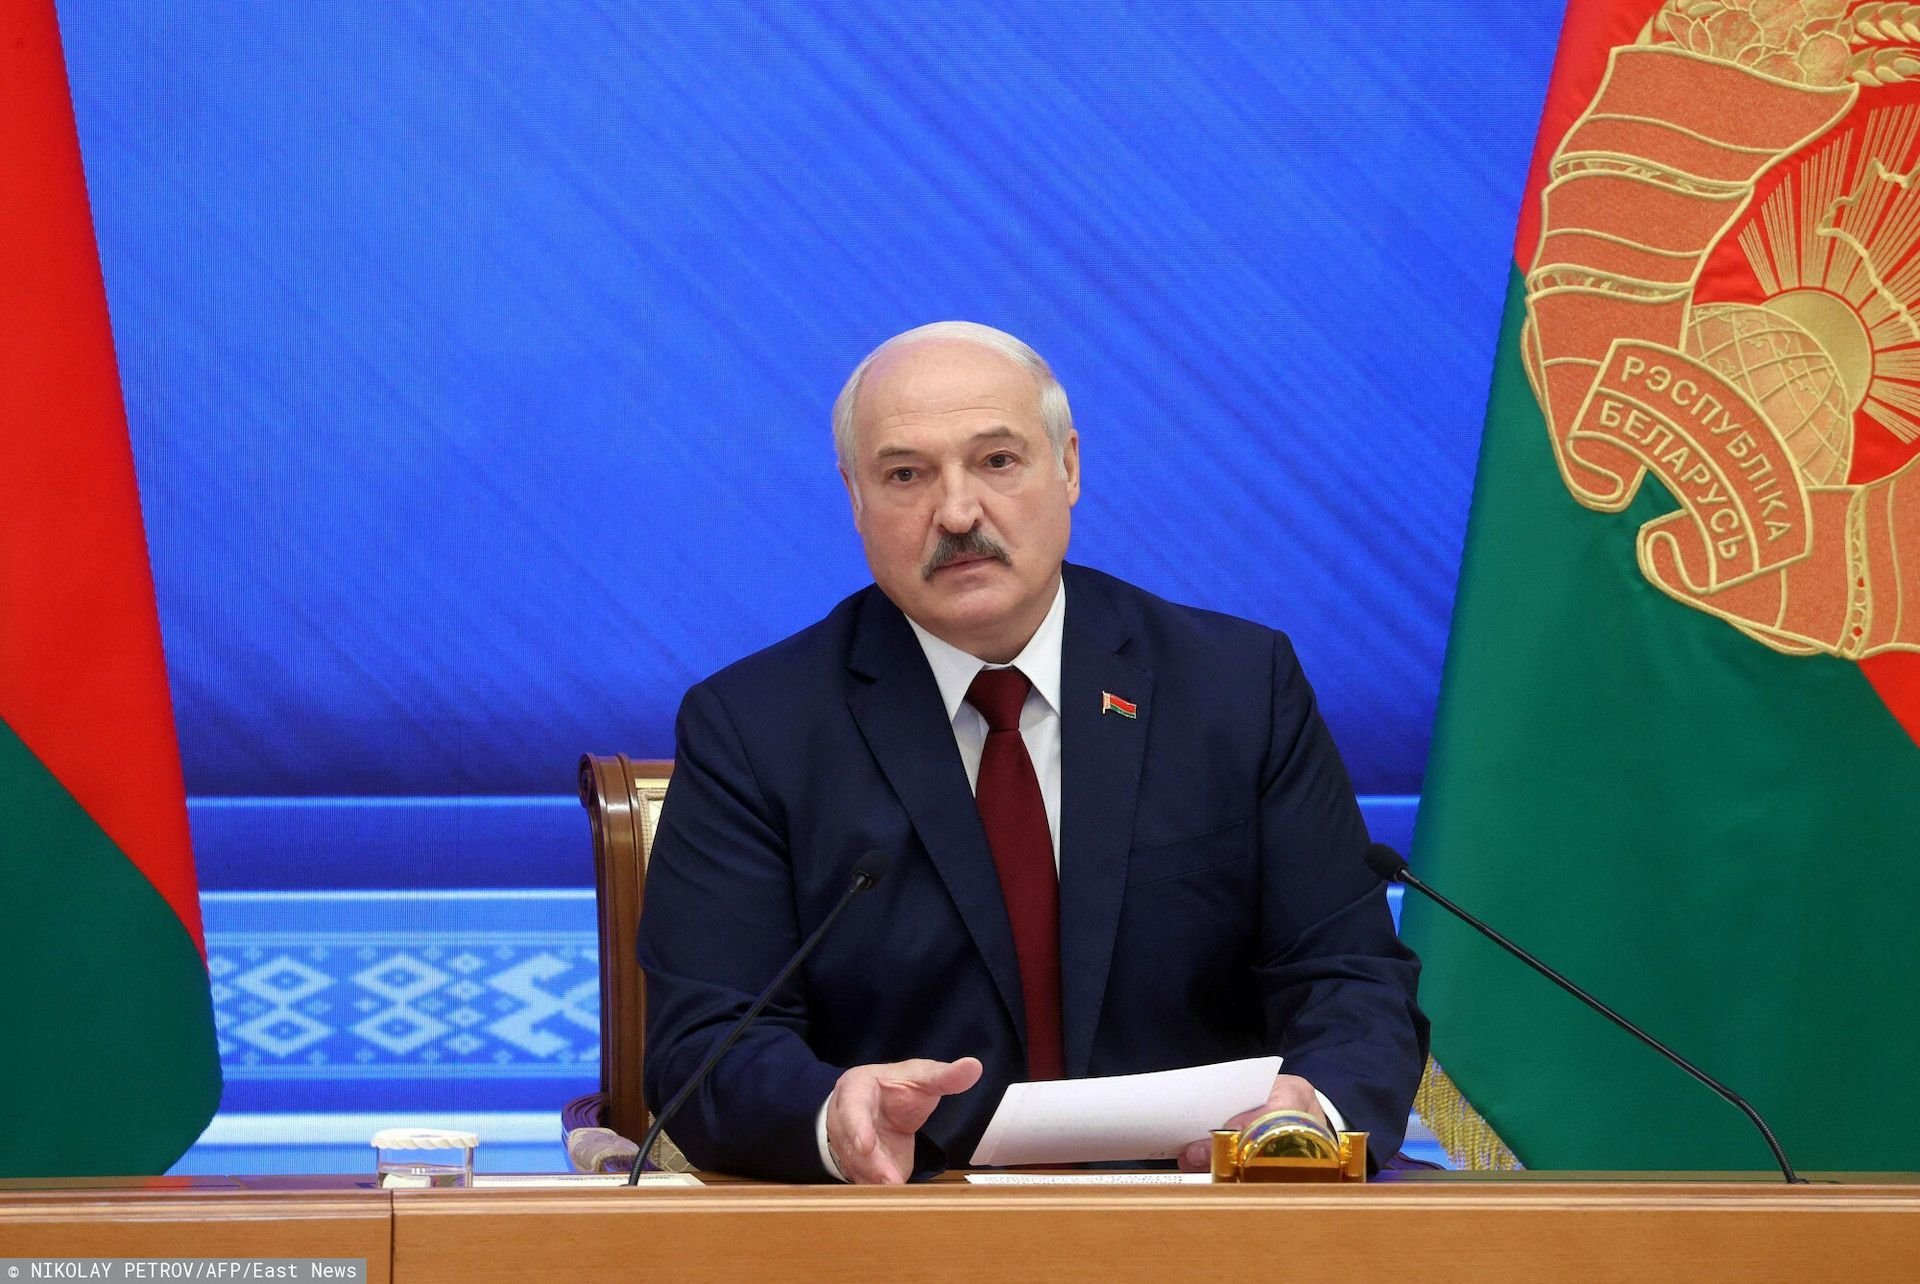 Białoruś: od 1 stycznia Aleksandr Łukaszenka wprowadza embargo na produkty z Polski